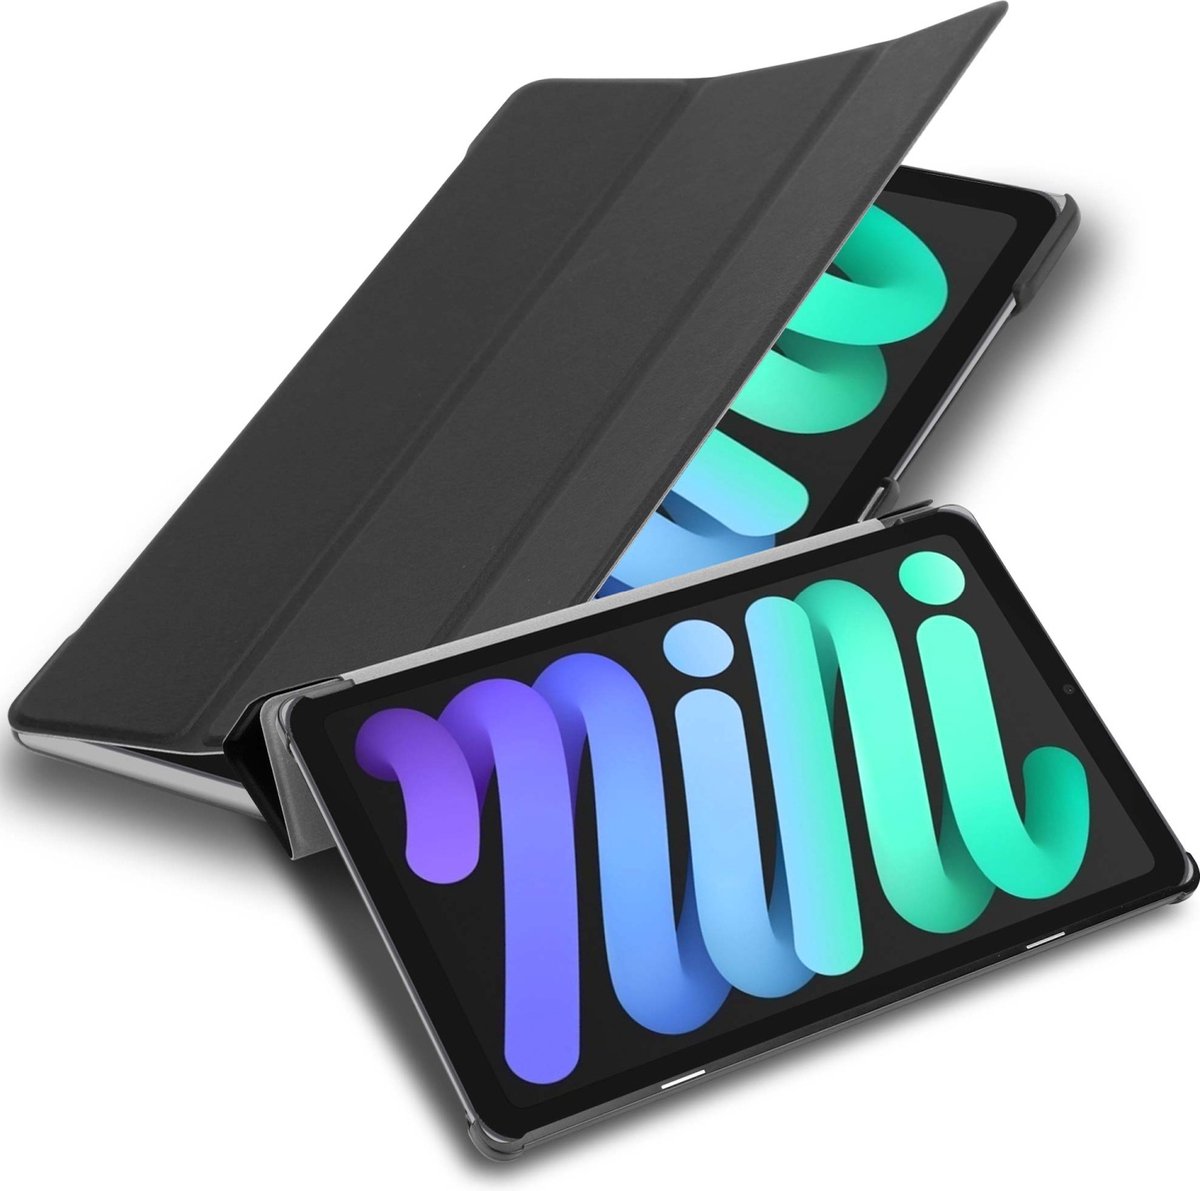 Cadorabo Tablet Hoesje voor Apple iPad MINI 6 (8.3 inch) in SATIJN ZWART - Ultra dun beschermend geval met automatische Wake Up en Stand functie Book Case Cover Etui